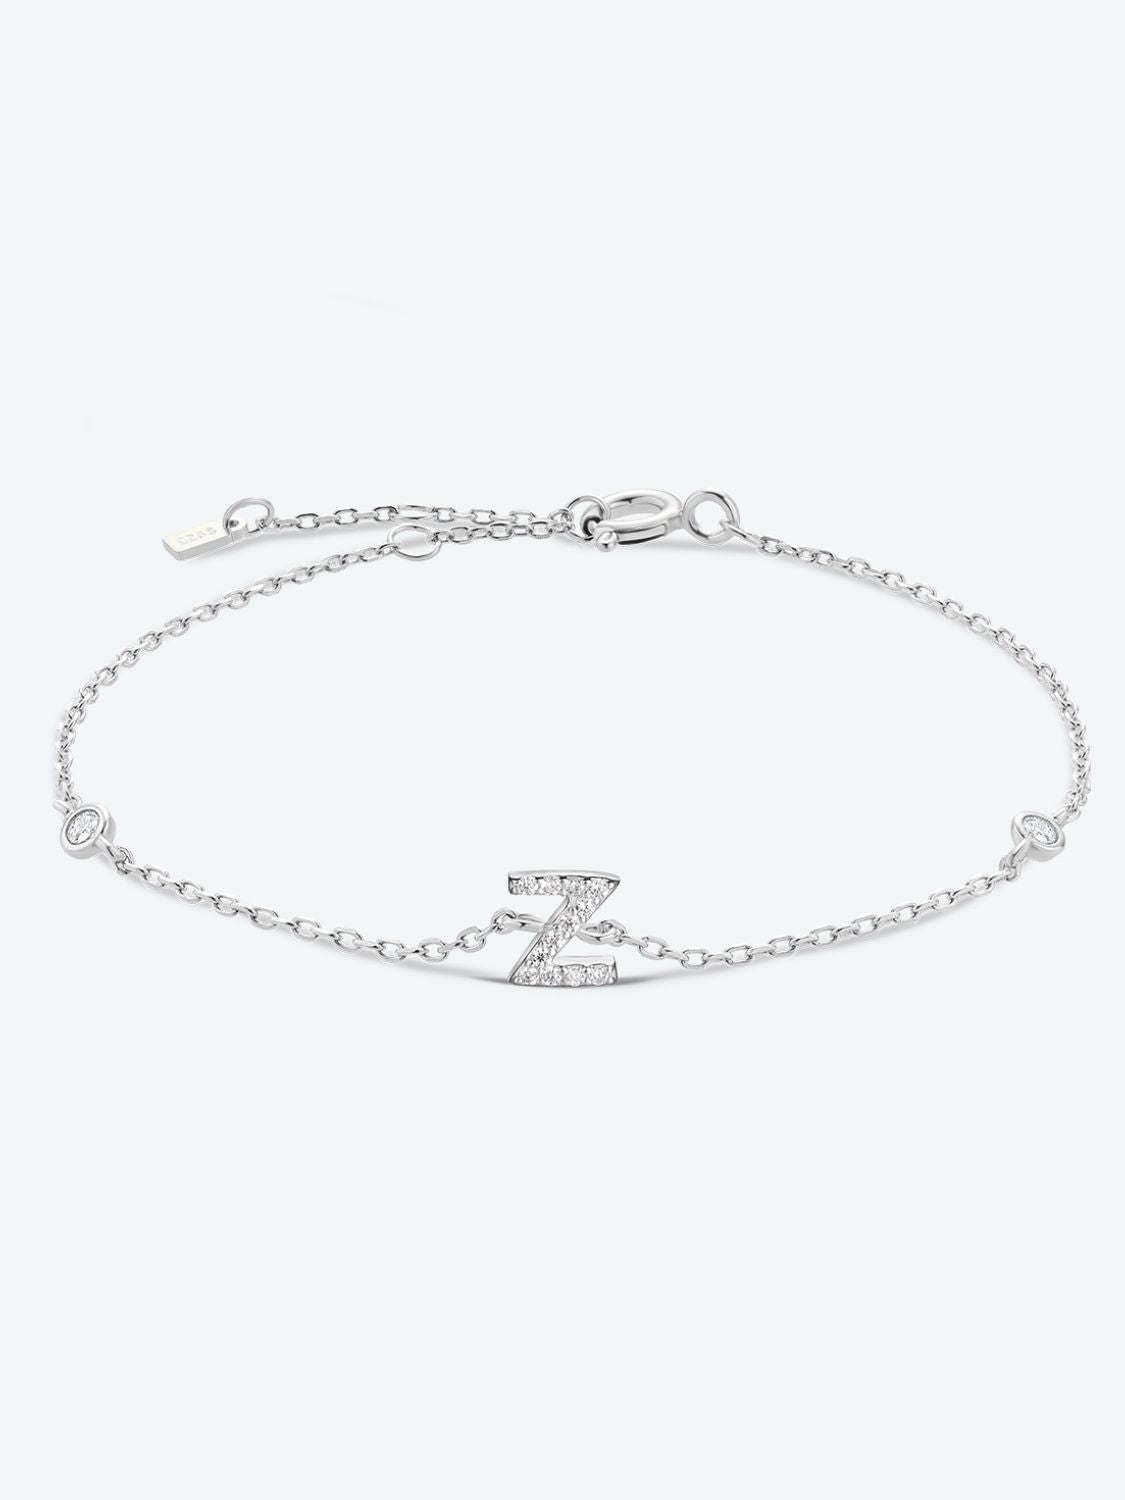 V To Z Zircon 925 Sterling Silver Bracelet - Z/Silver / One Size - Women’s Jewelry - Bracelets - 28 - 2024